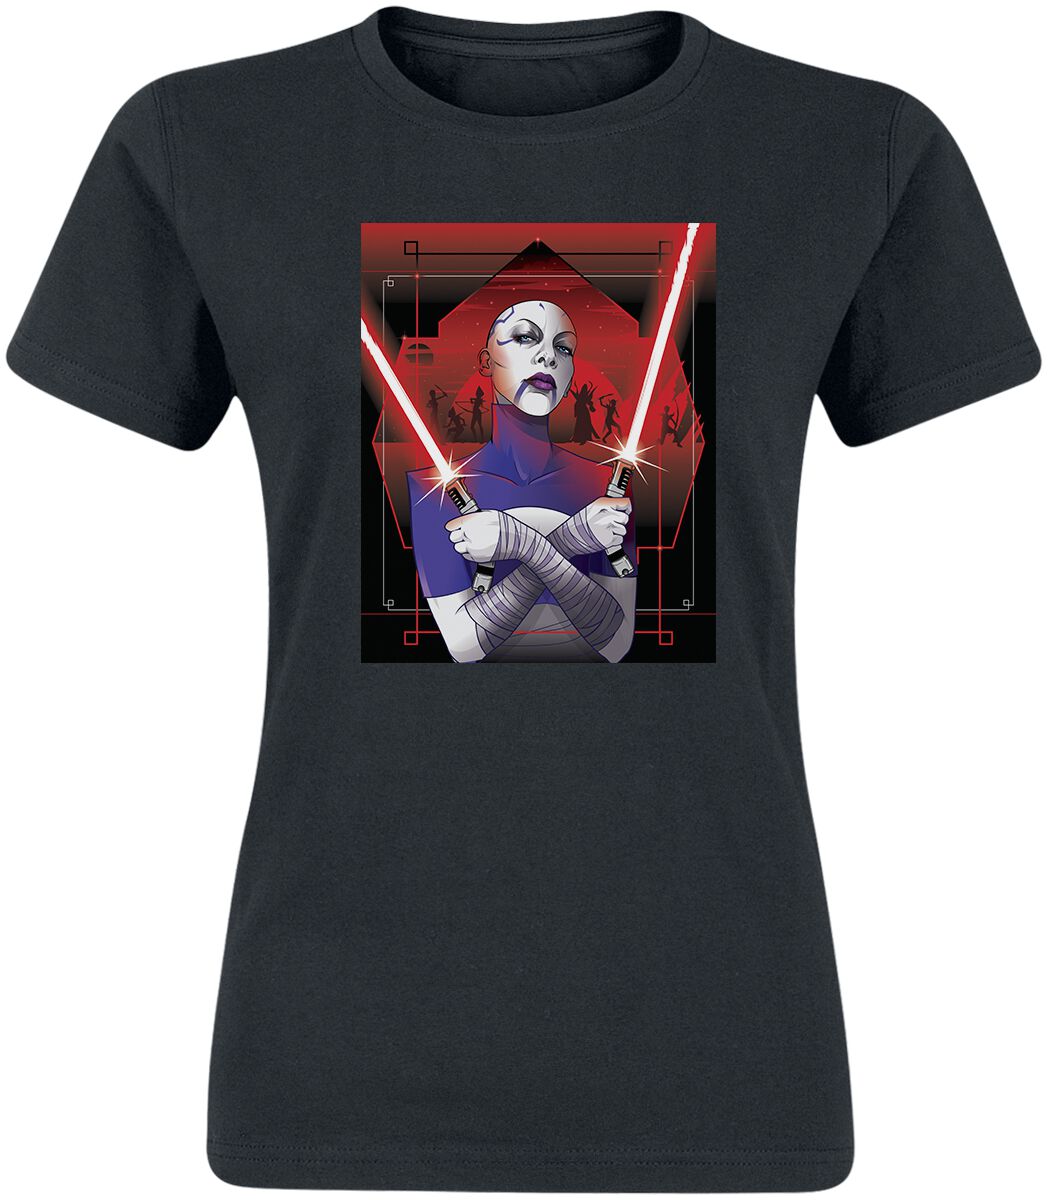 T-Shirt Manches courtes de Star Wars - Ahsoka - Assajj Ventress - S à XXL - pour Femme - noir